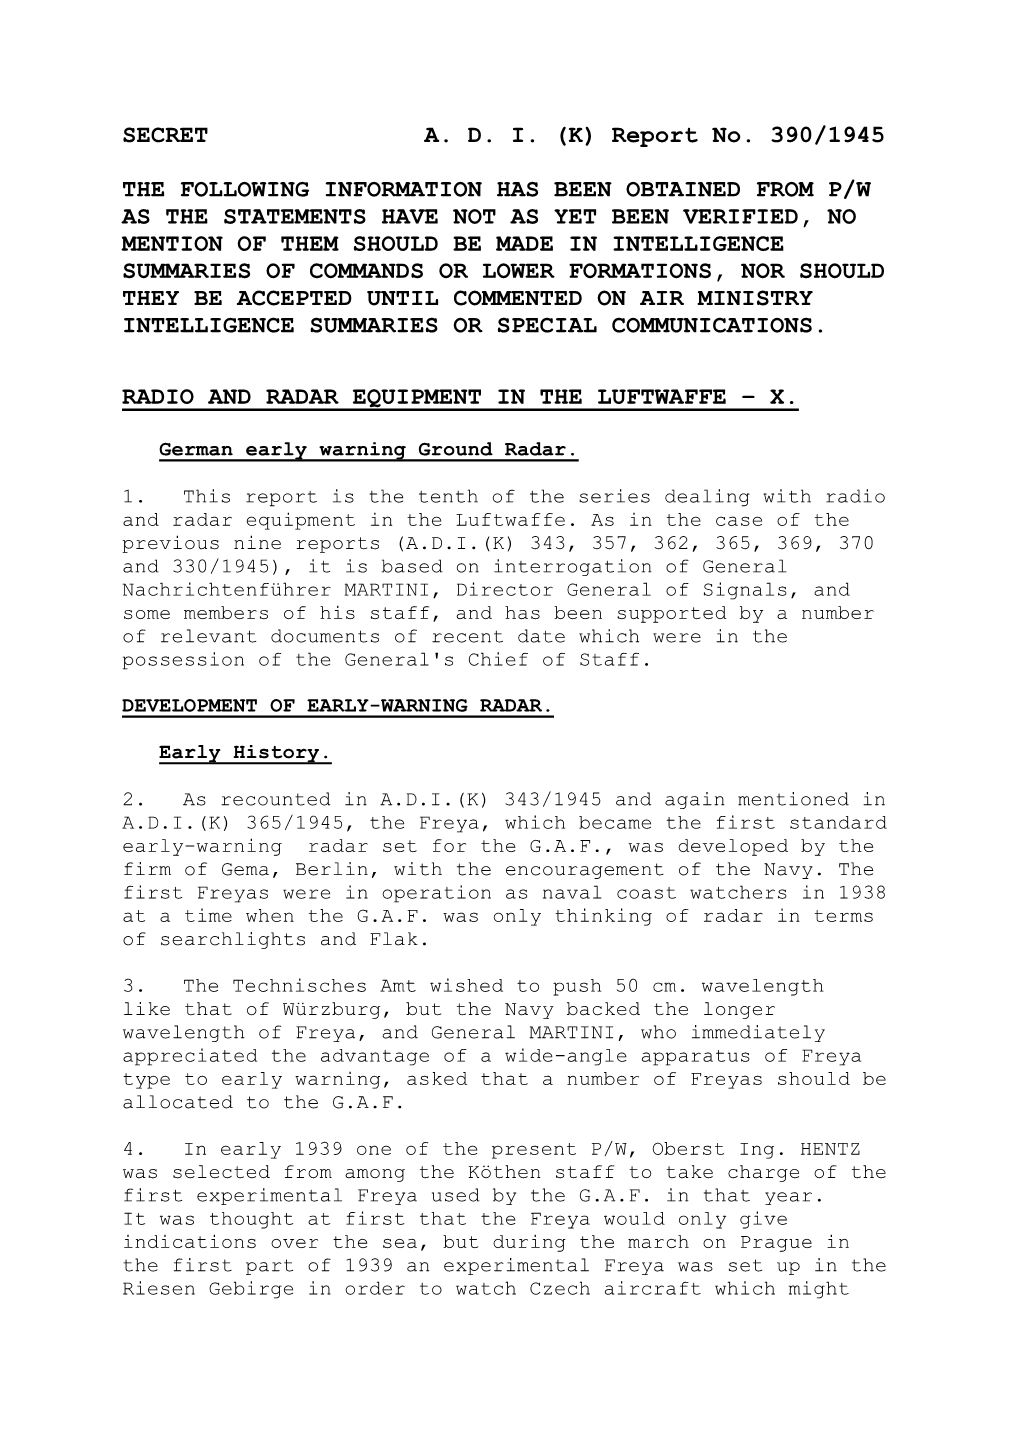 SECRET A. D. I. (K) Report No. 390/1945 the FOLLOWING